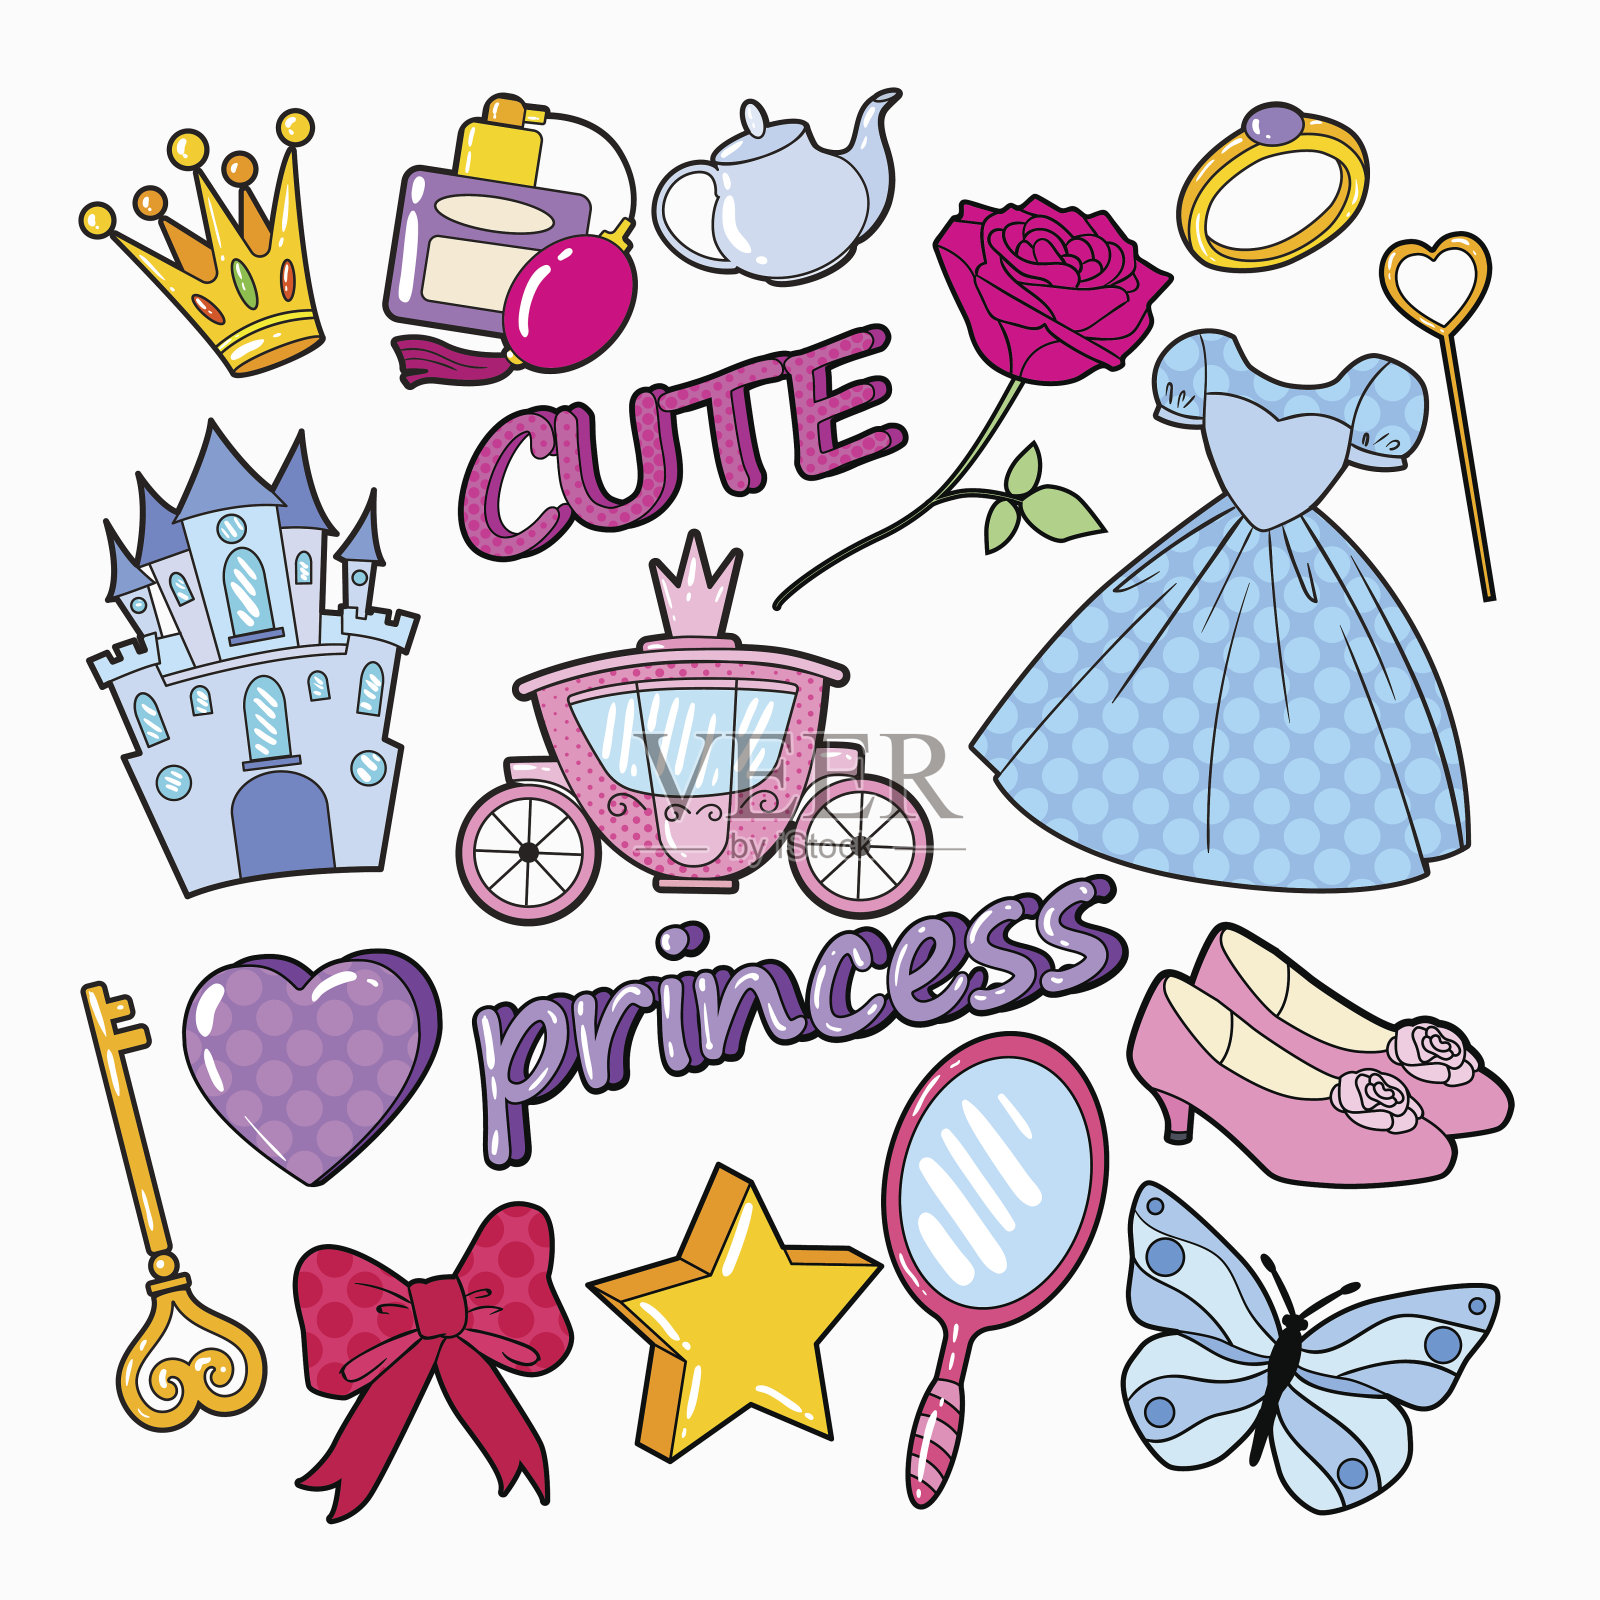 画着城堡、皇冠和星星的小公主设计元素图片